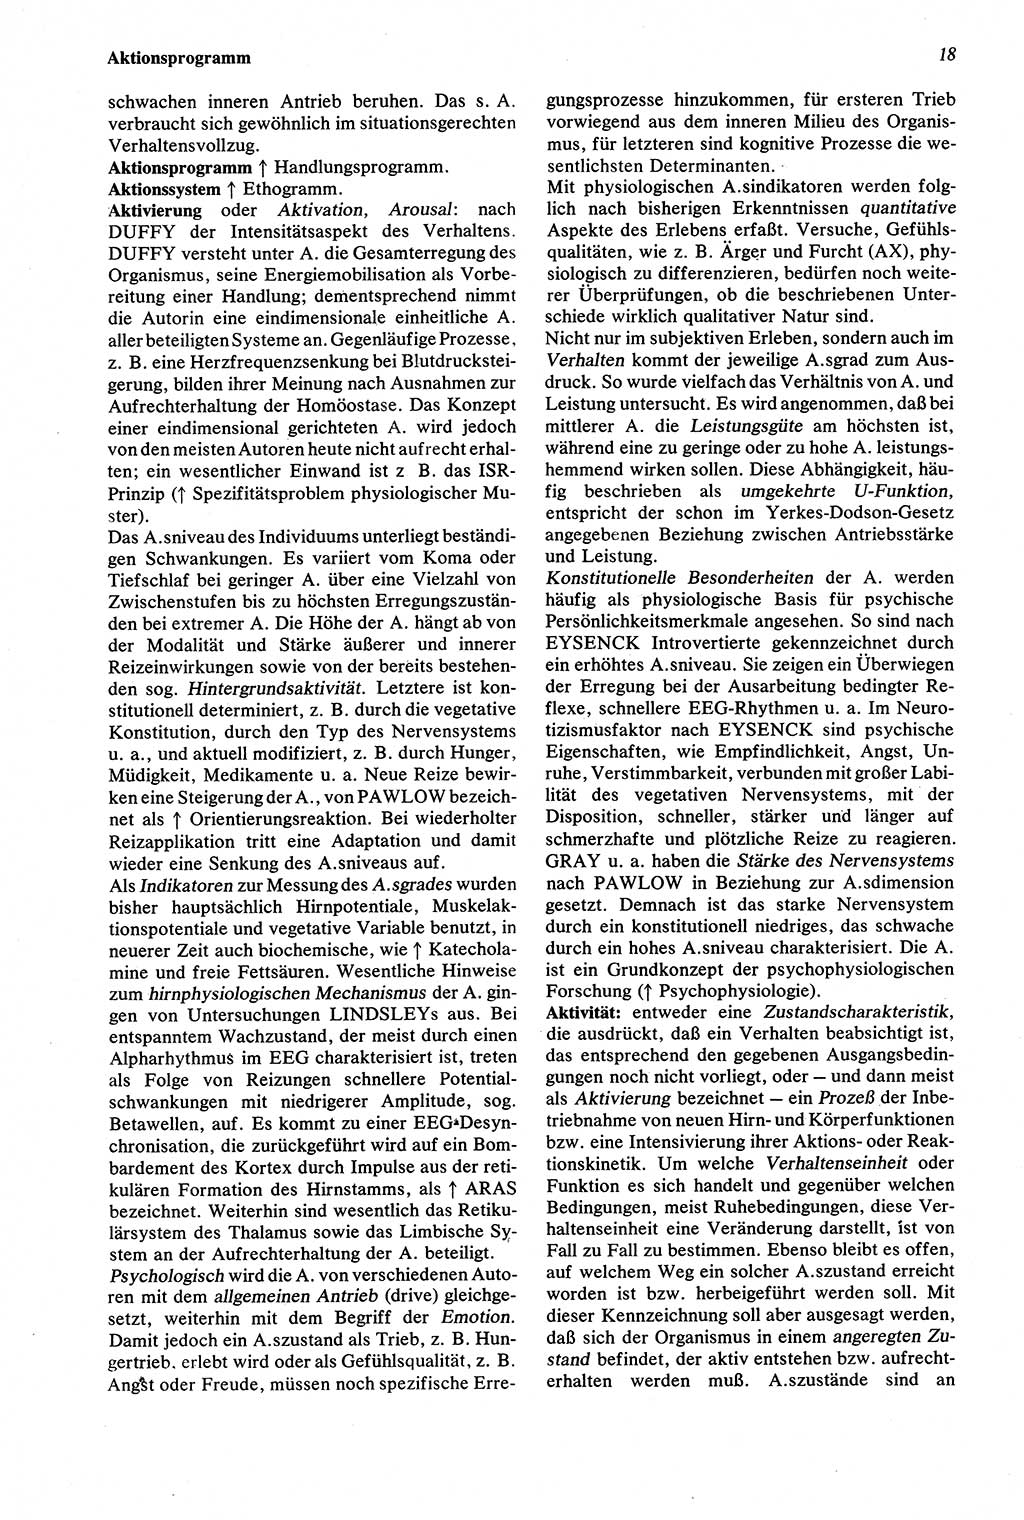 Wörterbuch der Psychologie [Deutsche Demokratische Republik (DDR)] 1976, Seite 18 (Wb. Psych. DDR 1976, S. 18)